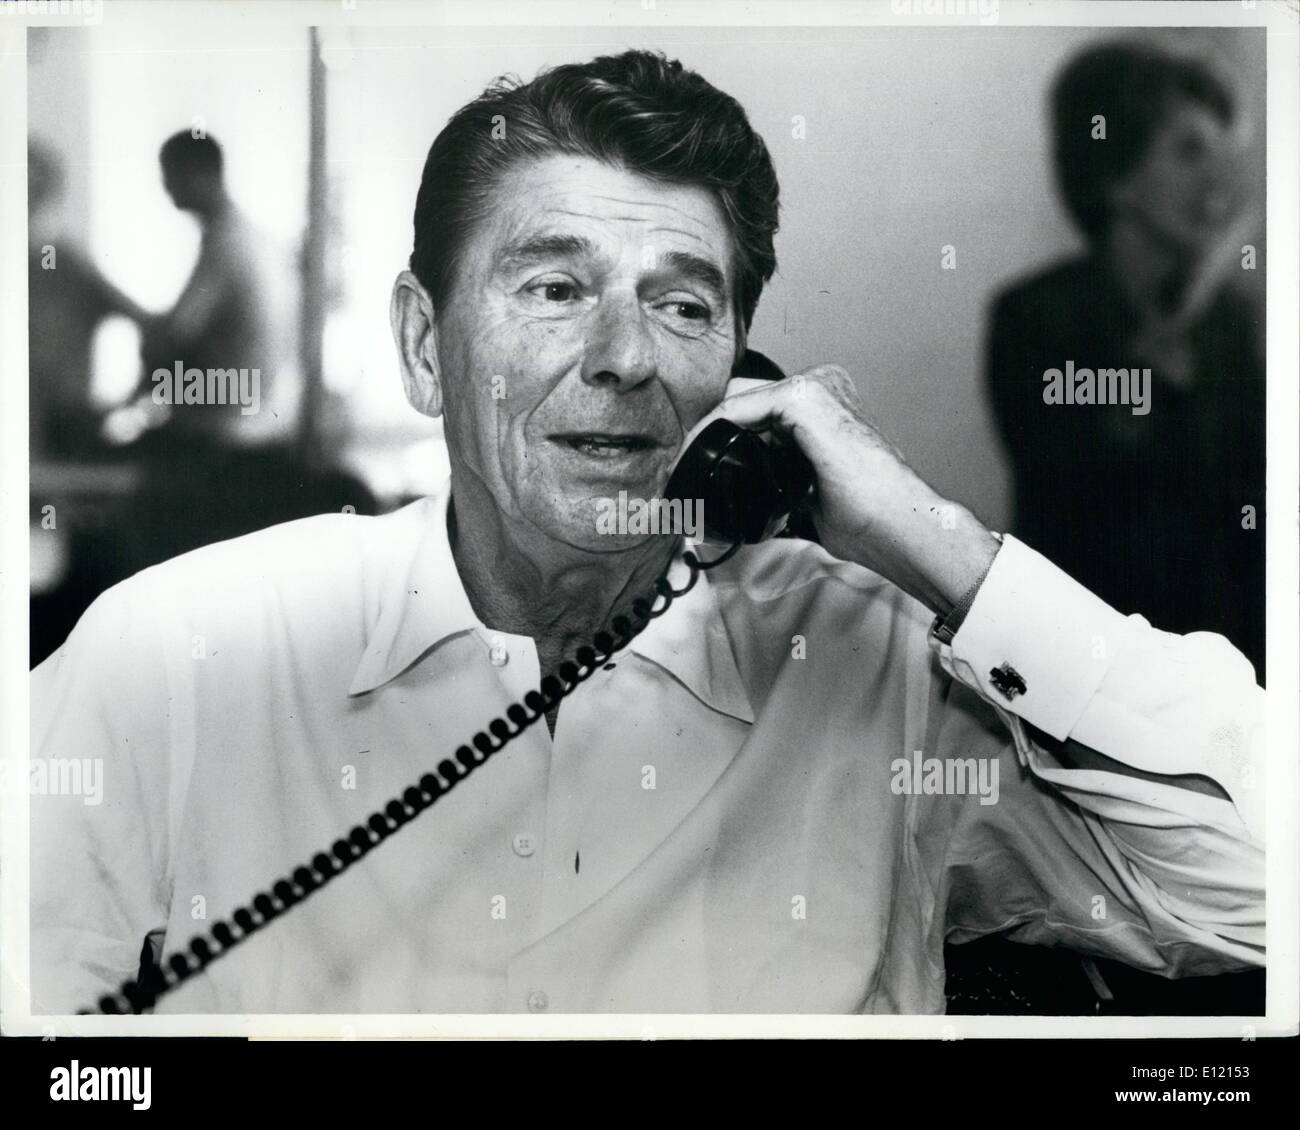 6. Juni 1981 - Konzern News Bilder: propagierte geschoben für seinen Haushalt stimmen, Los Angeles, Calif. Präsident Ronald W. Reagan ist zeigt in Los Angeles, Kalifornien, als er sich am Telefon, Unterstützung für seinen Haushalt Proposalds aufzutreiben. Der Präsident ist auf eine Multi-Tour sprechen und übernachteten in Los Angeles, um seine Anrufe zu tätigen, die Verwaltung Abstimmung schließlich schaffte es durch den Kongress und mit einer guten Abstimmung Marge. Weiße Haus Foto von konsolidiert. Stockfoto